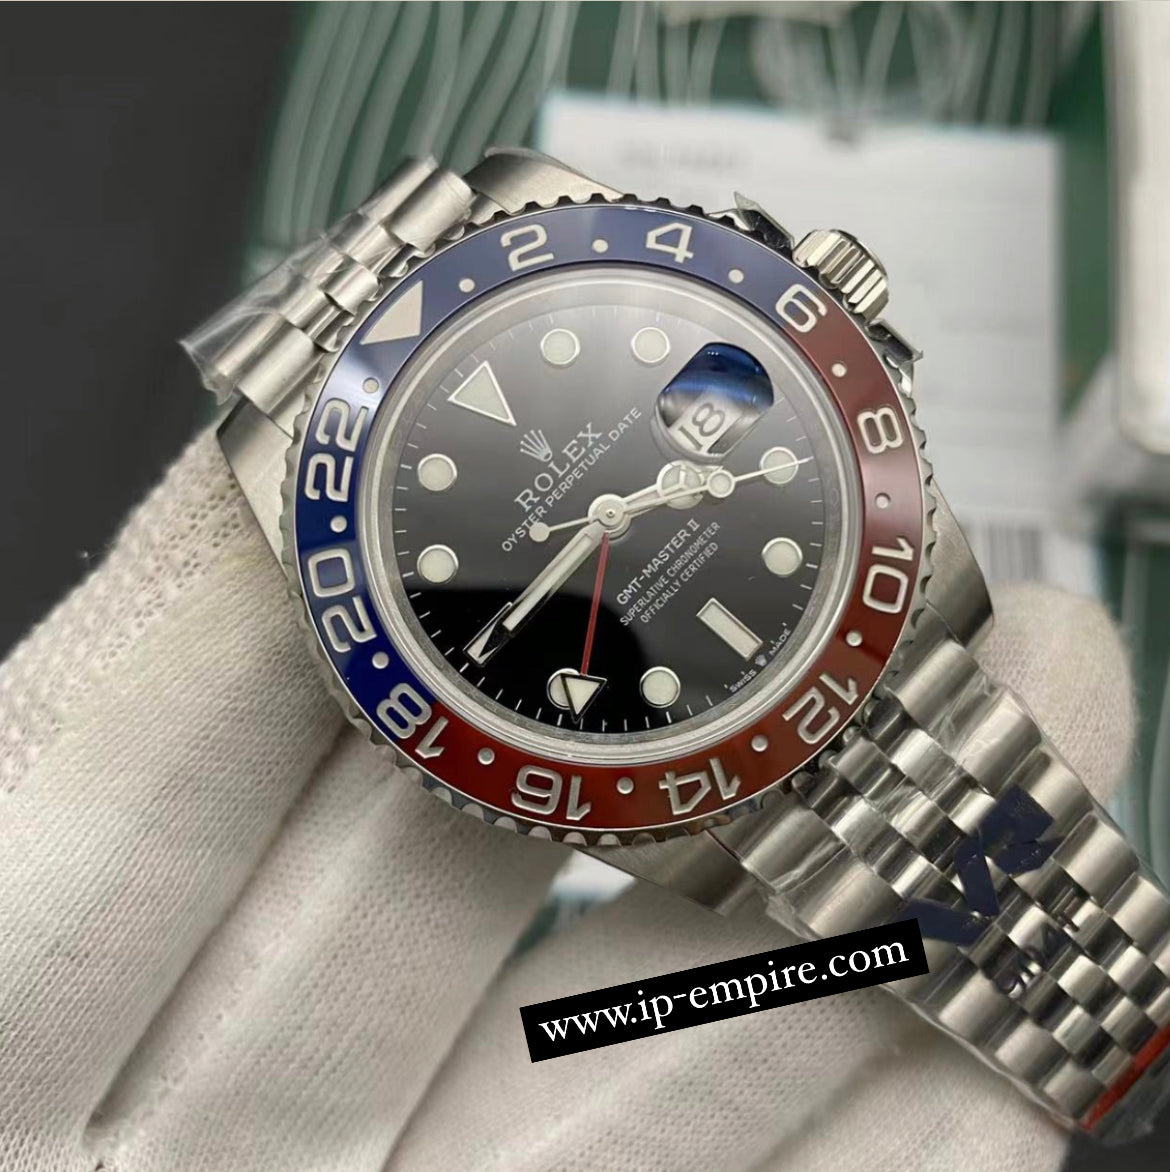 Replica Rolex GMT Master - Silver/Red/Blue (PEPSI) - IP Empire Replica Watches